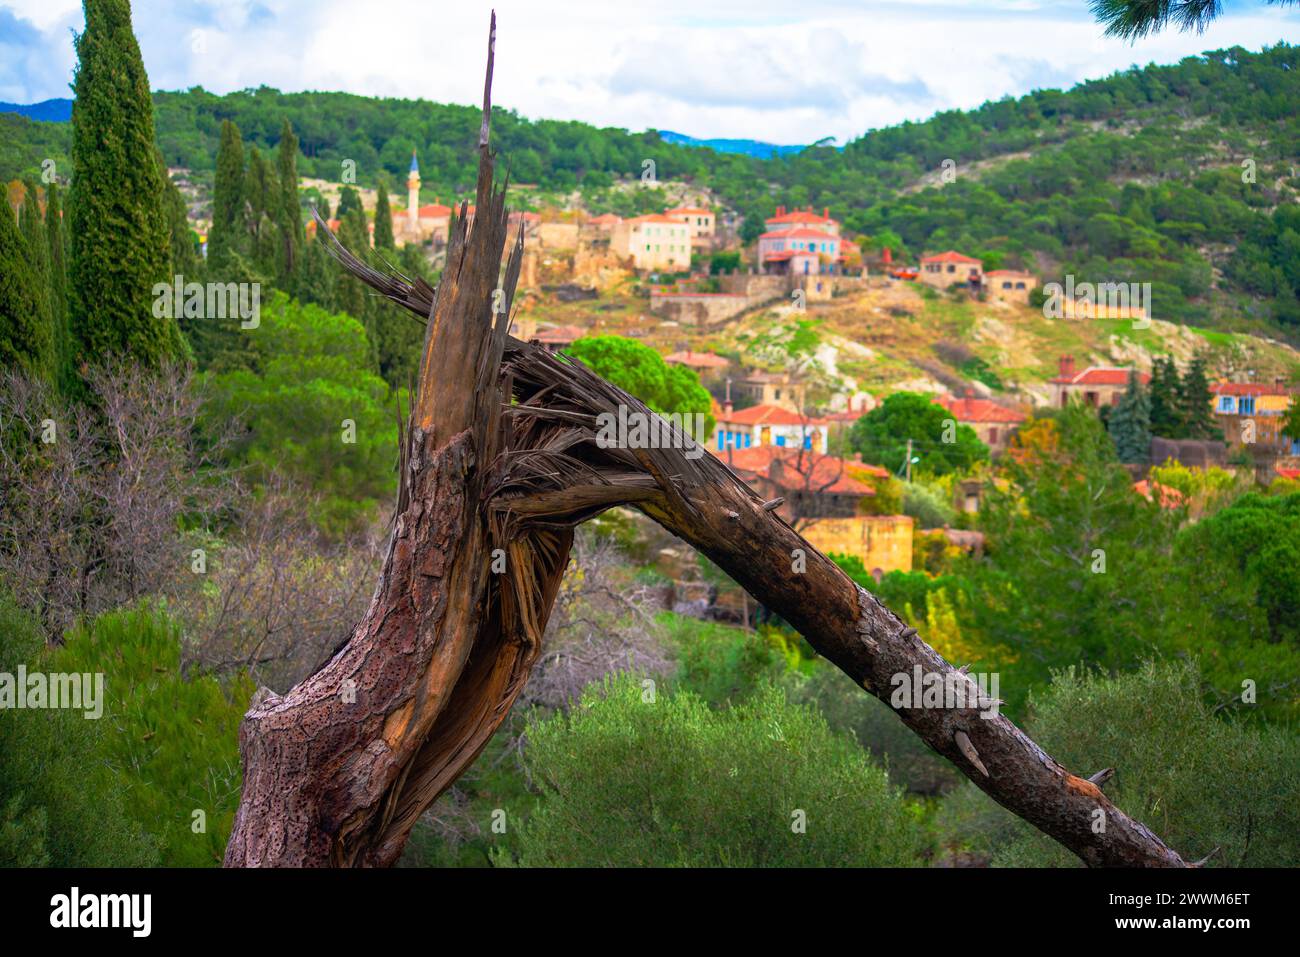 Résilience de la nature : un arbre brisé se tient résistant sur la toile de fond d'un village rural, incarnant la force de l'environnement environnant. Banque D'Images